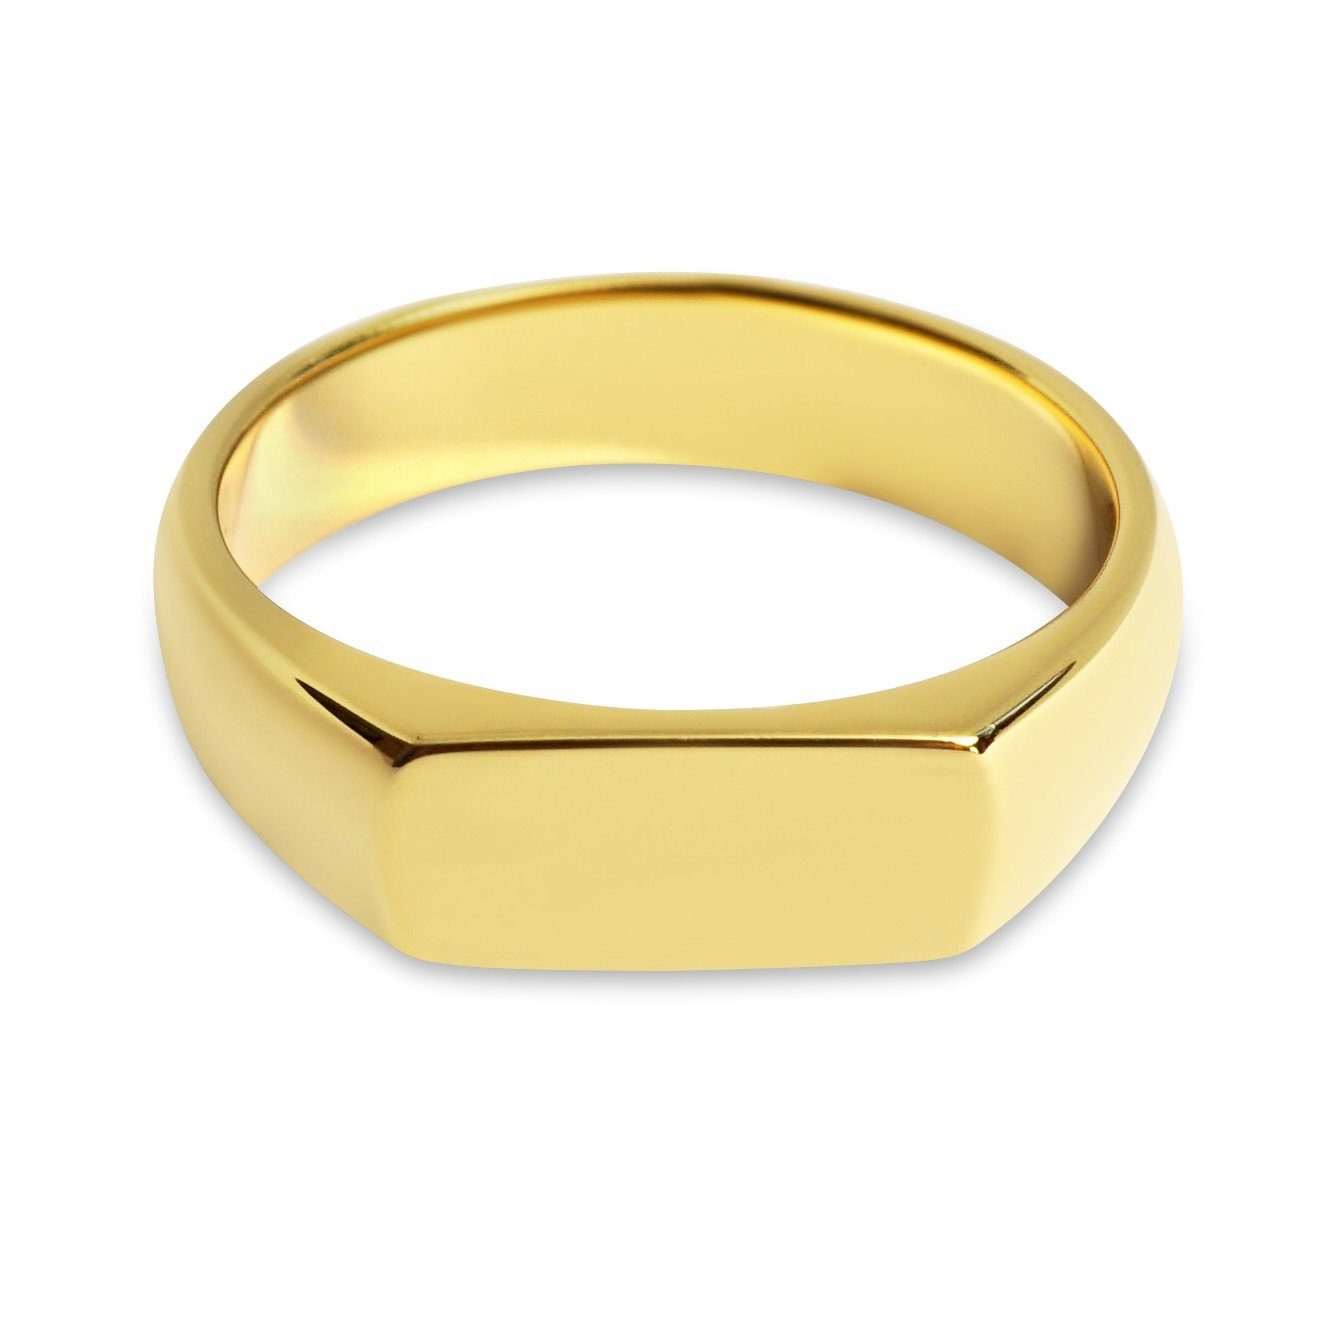 Sprezzi Fashion Siegelring Herren Ring Silber und Gold aus 925 Sterling Silber poliert, poliert, handgemacht, minimalistisch, für Gravur geeignet